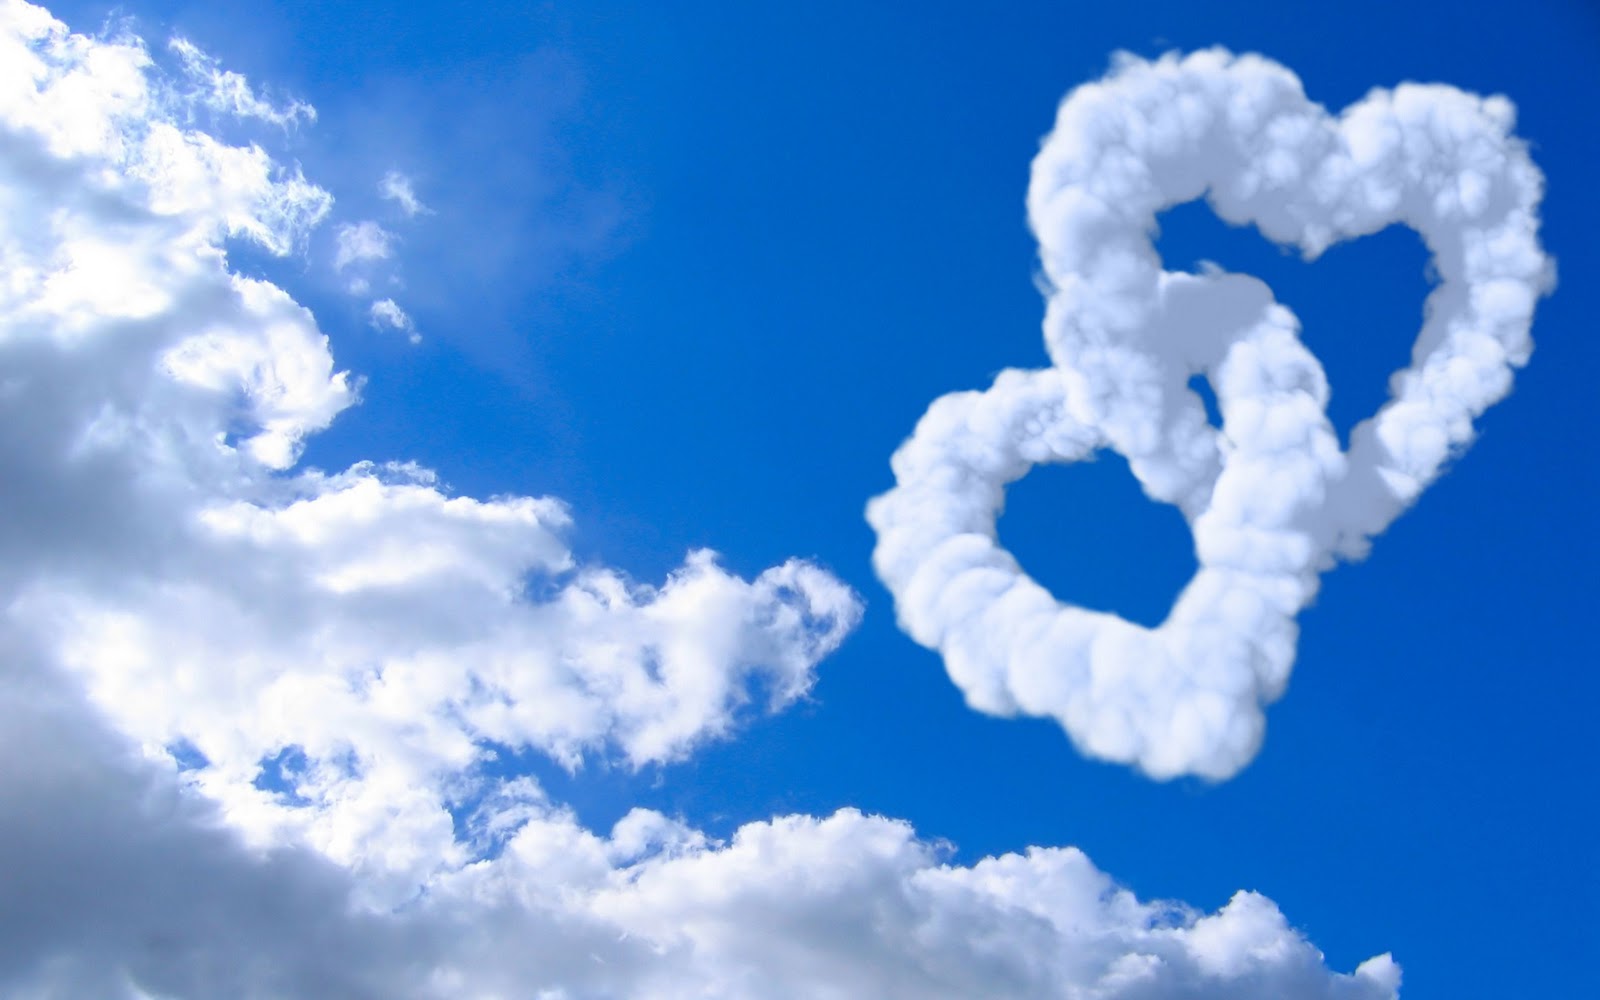 http://2.bp.blogspot.com/-XL8ks3tSBts/TygKoZsPJ2I/AAAAAAAAC8k/oySSJd9rKoU/s1600/love_hearts_clouds_in_blue_sky-wide.jpg